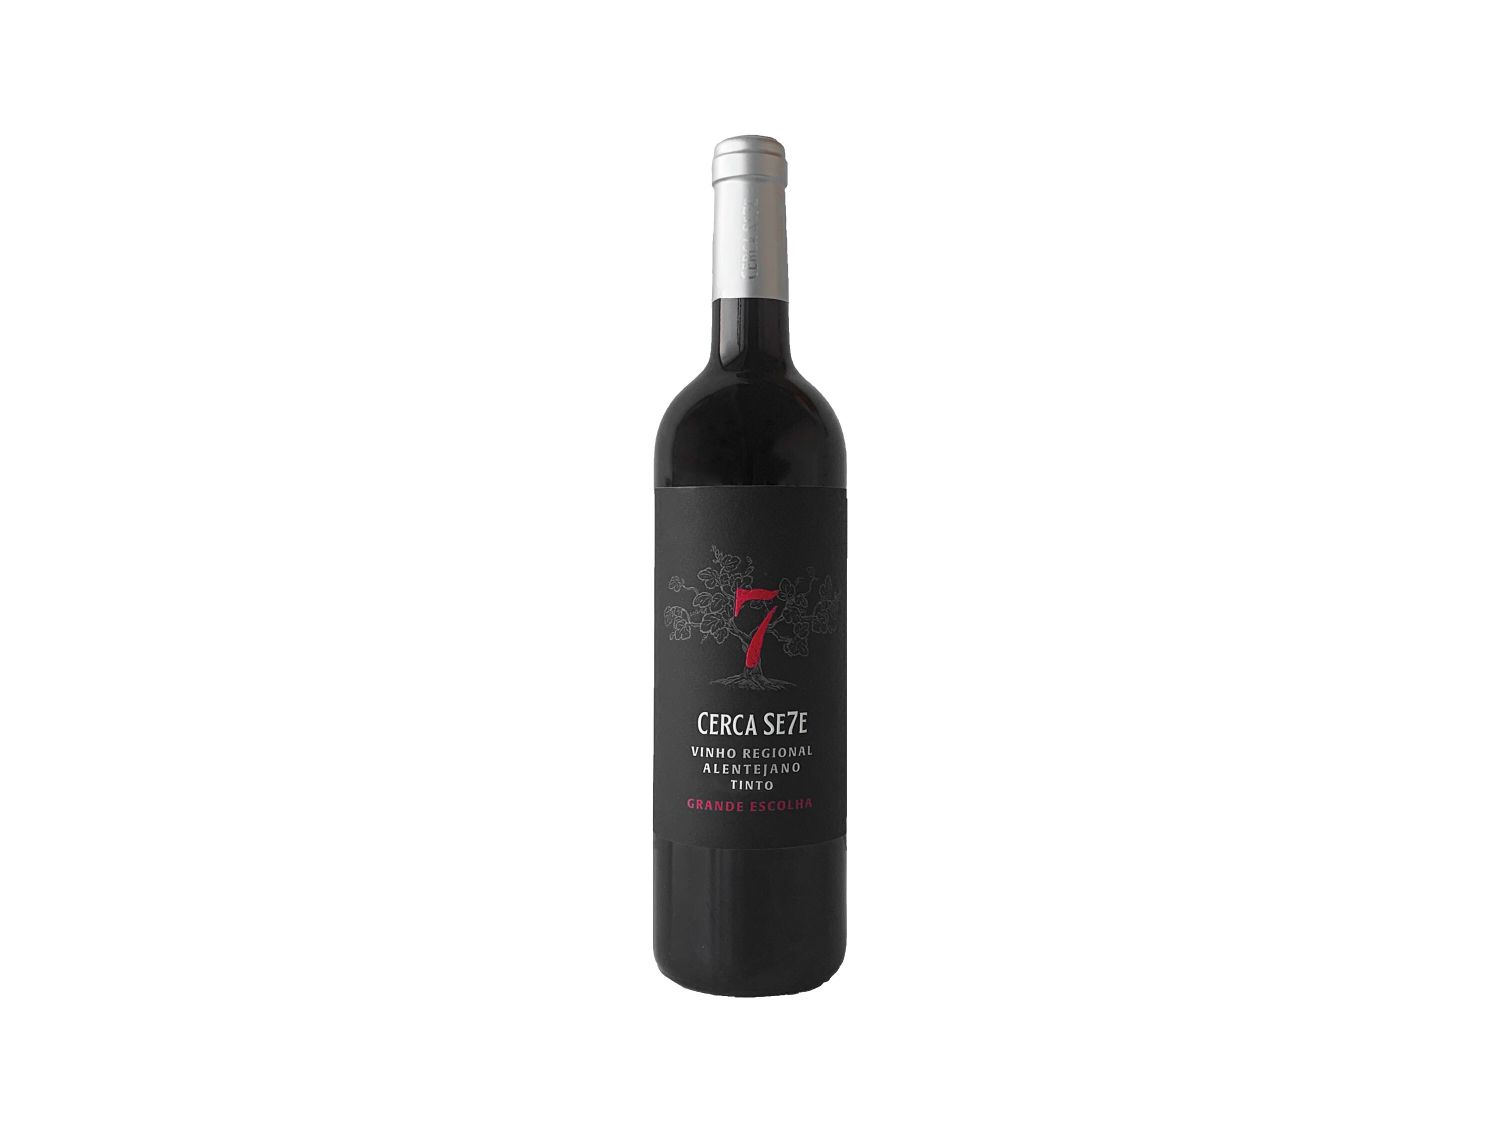 Cerca Se7e® Vinho Tinto Regional Alentejano - at Lidl